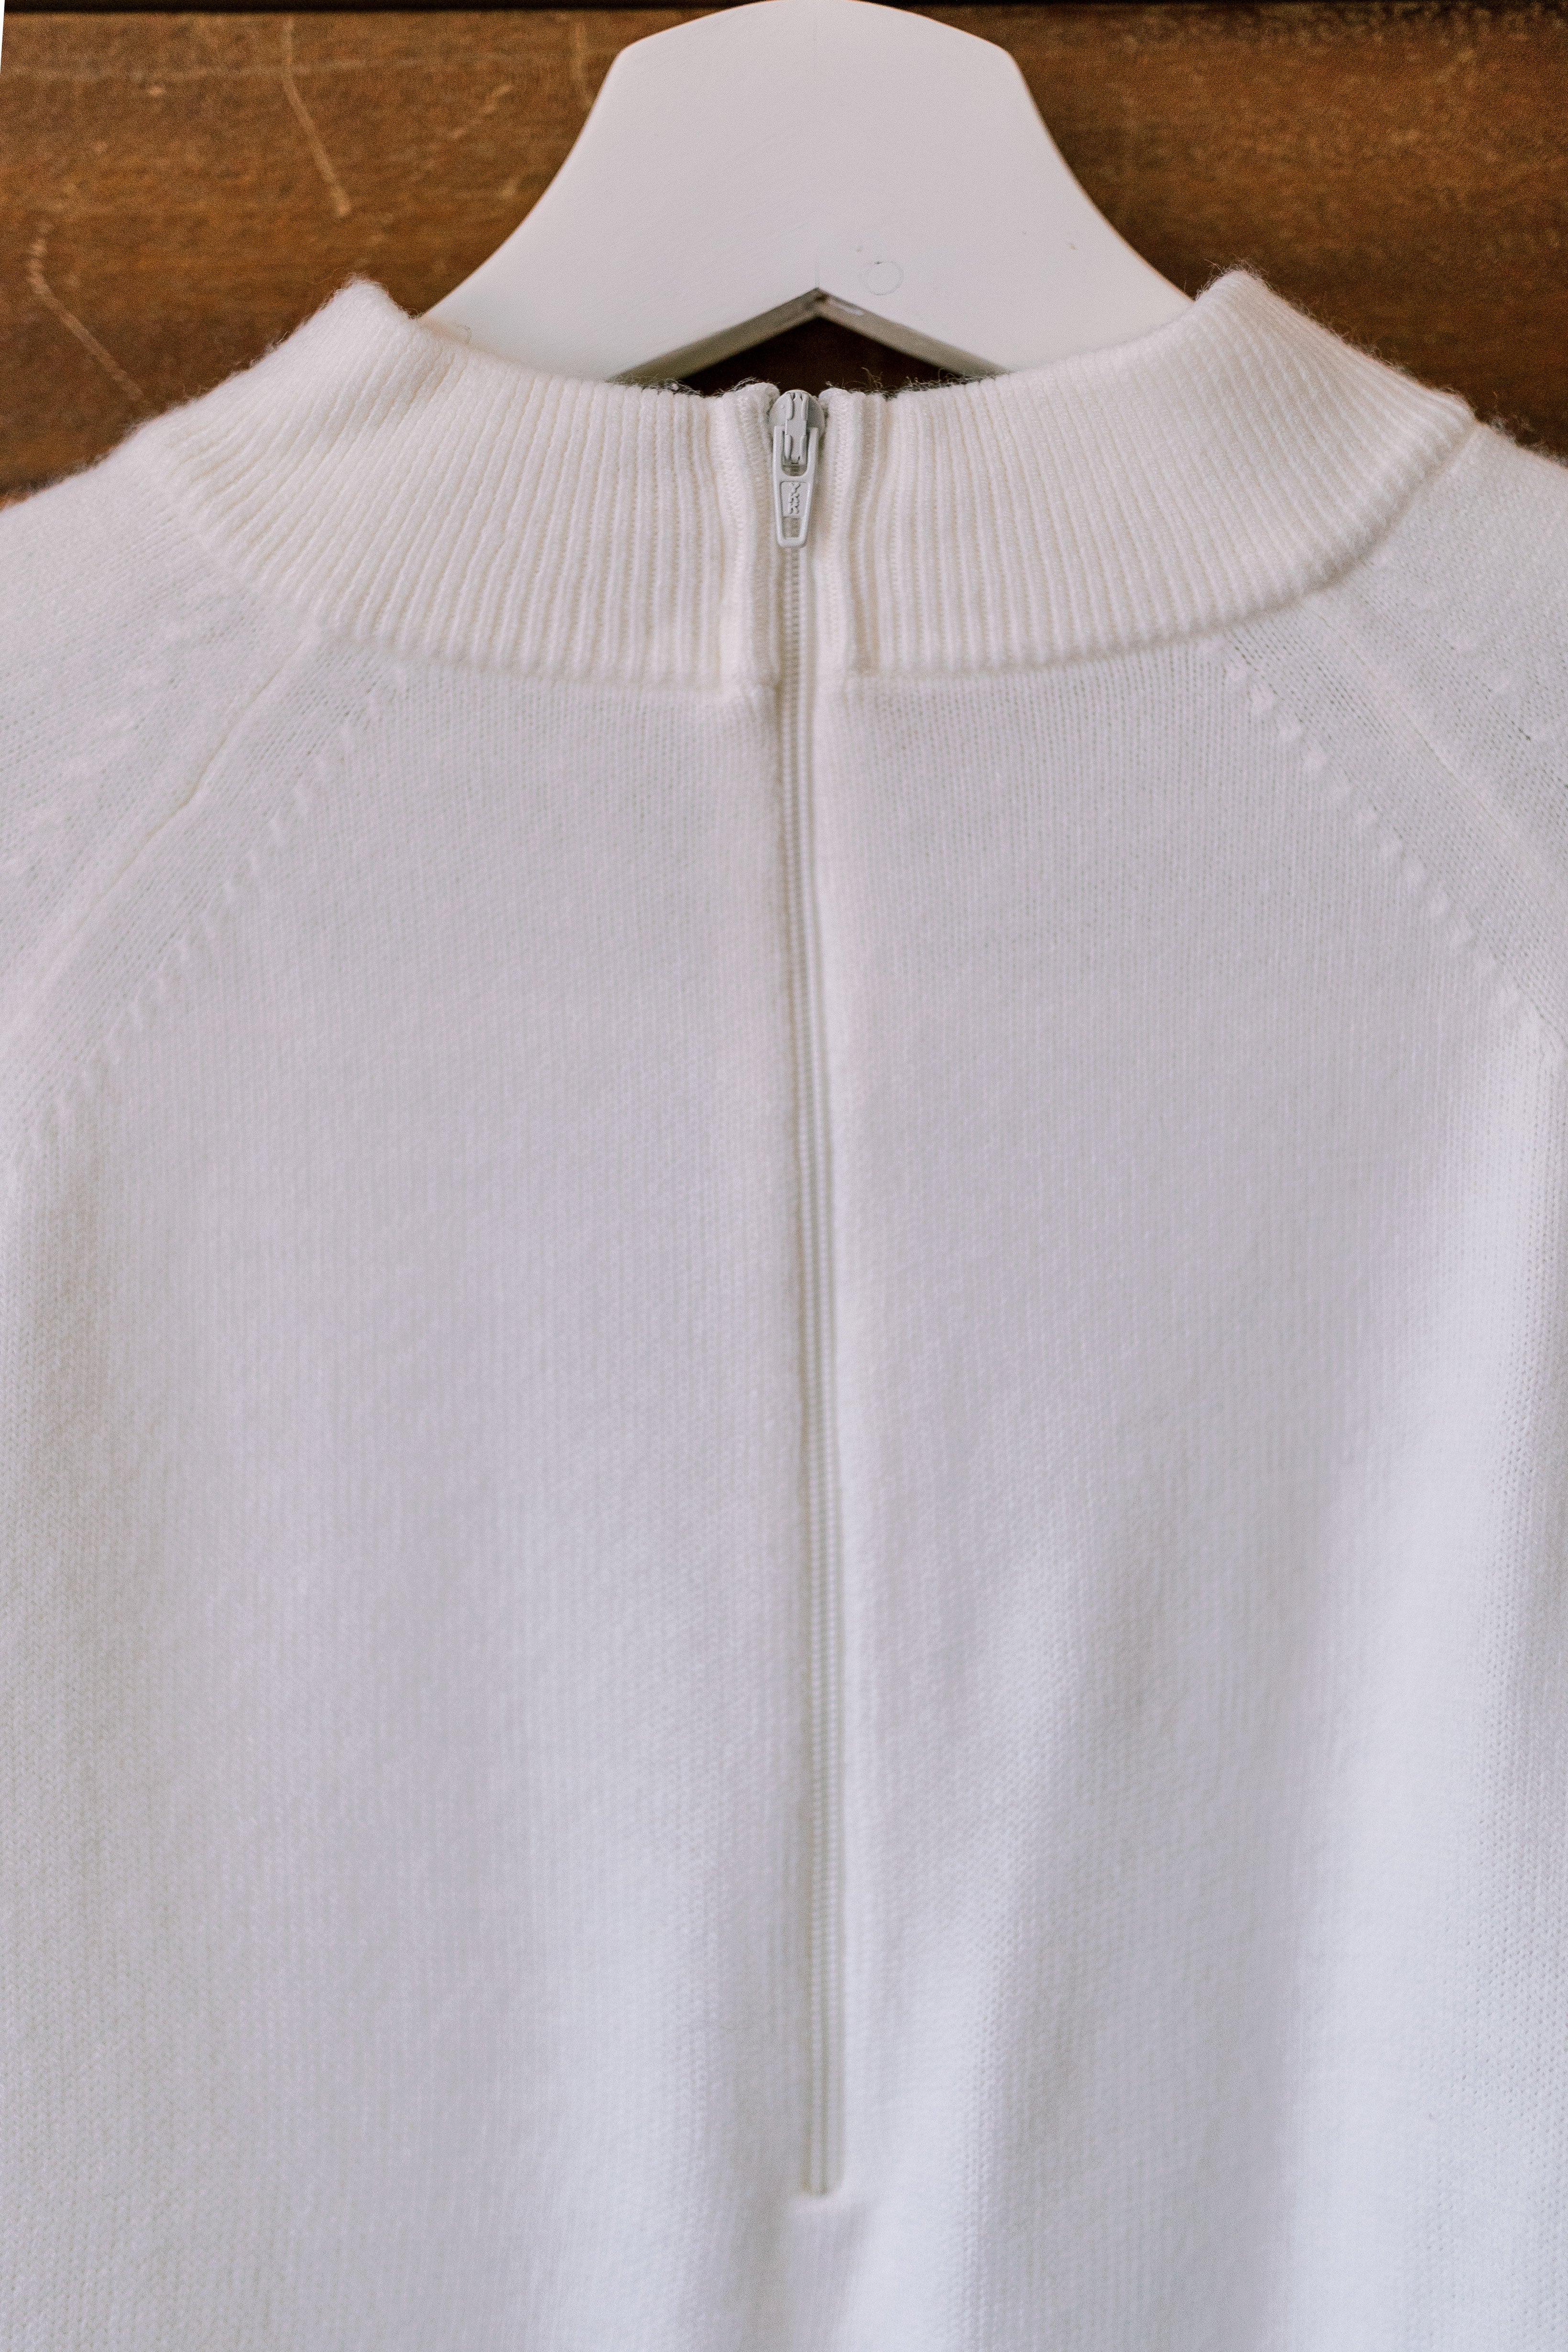 Vintage Designer Originals Offwhite Mockneck Sweater